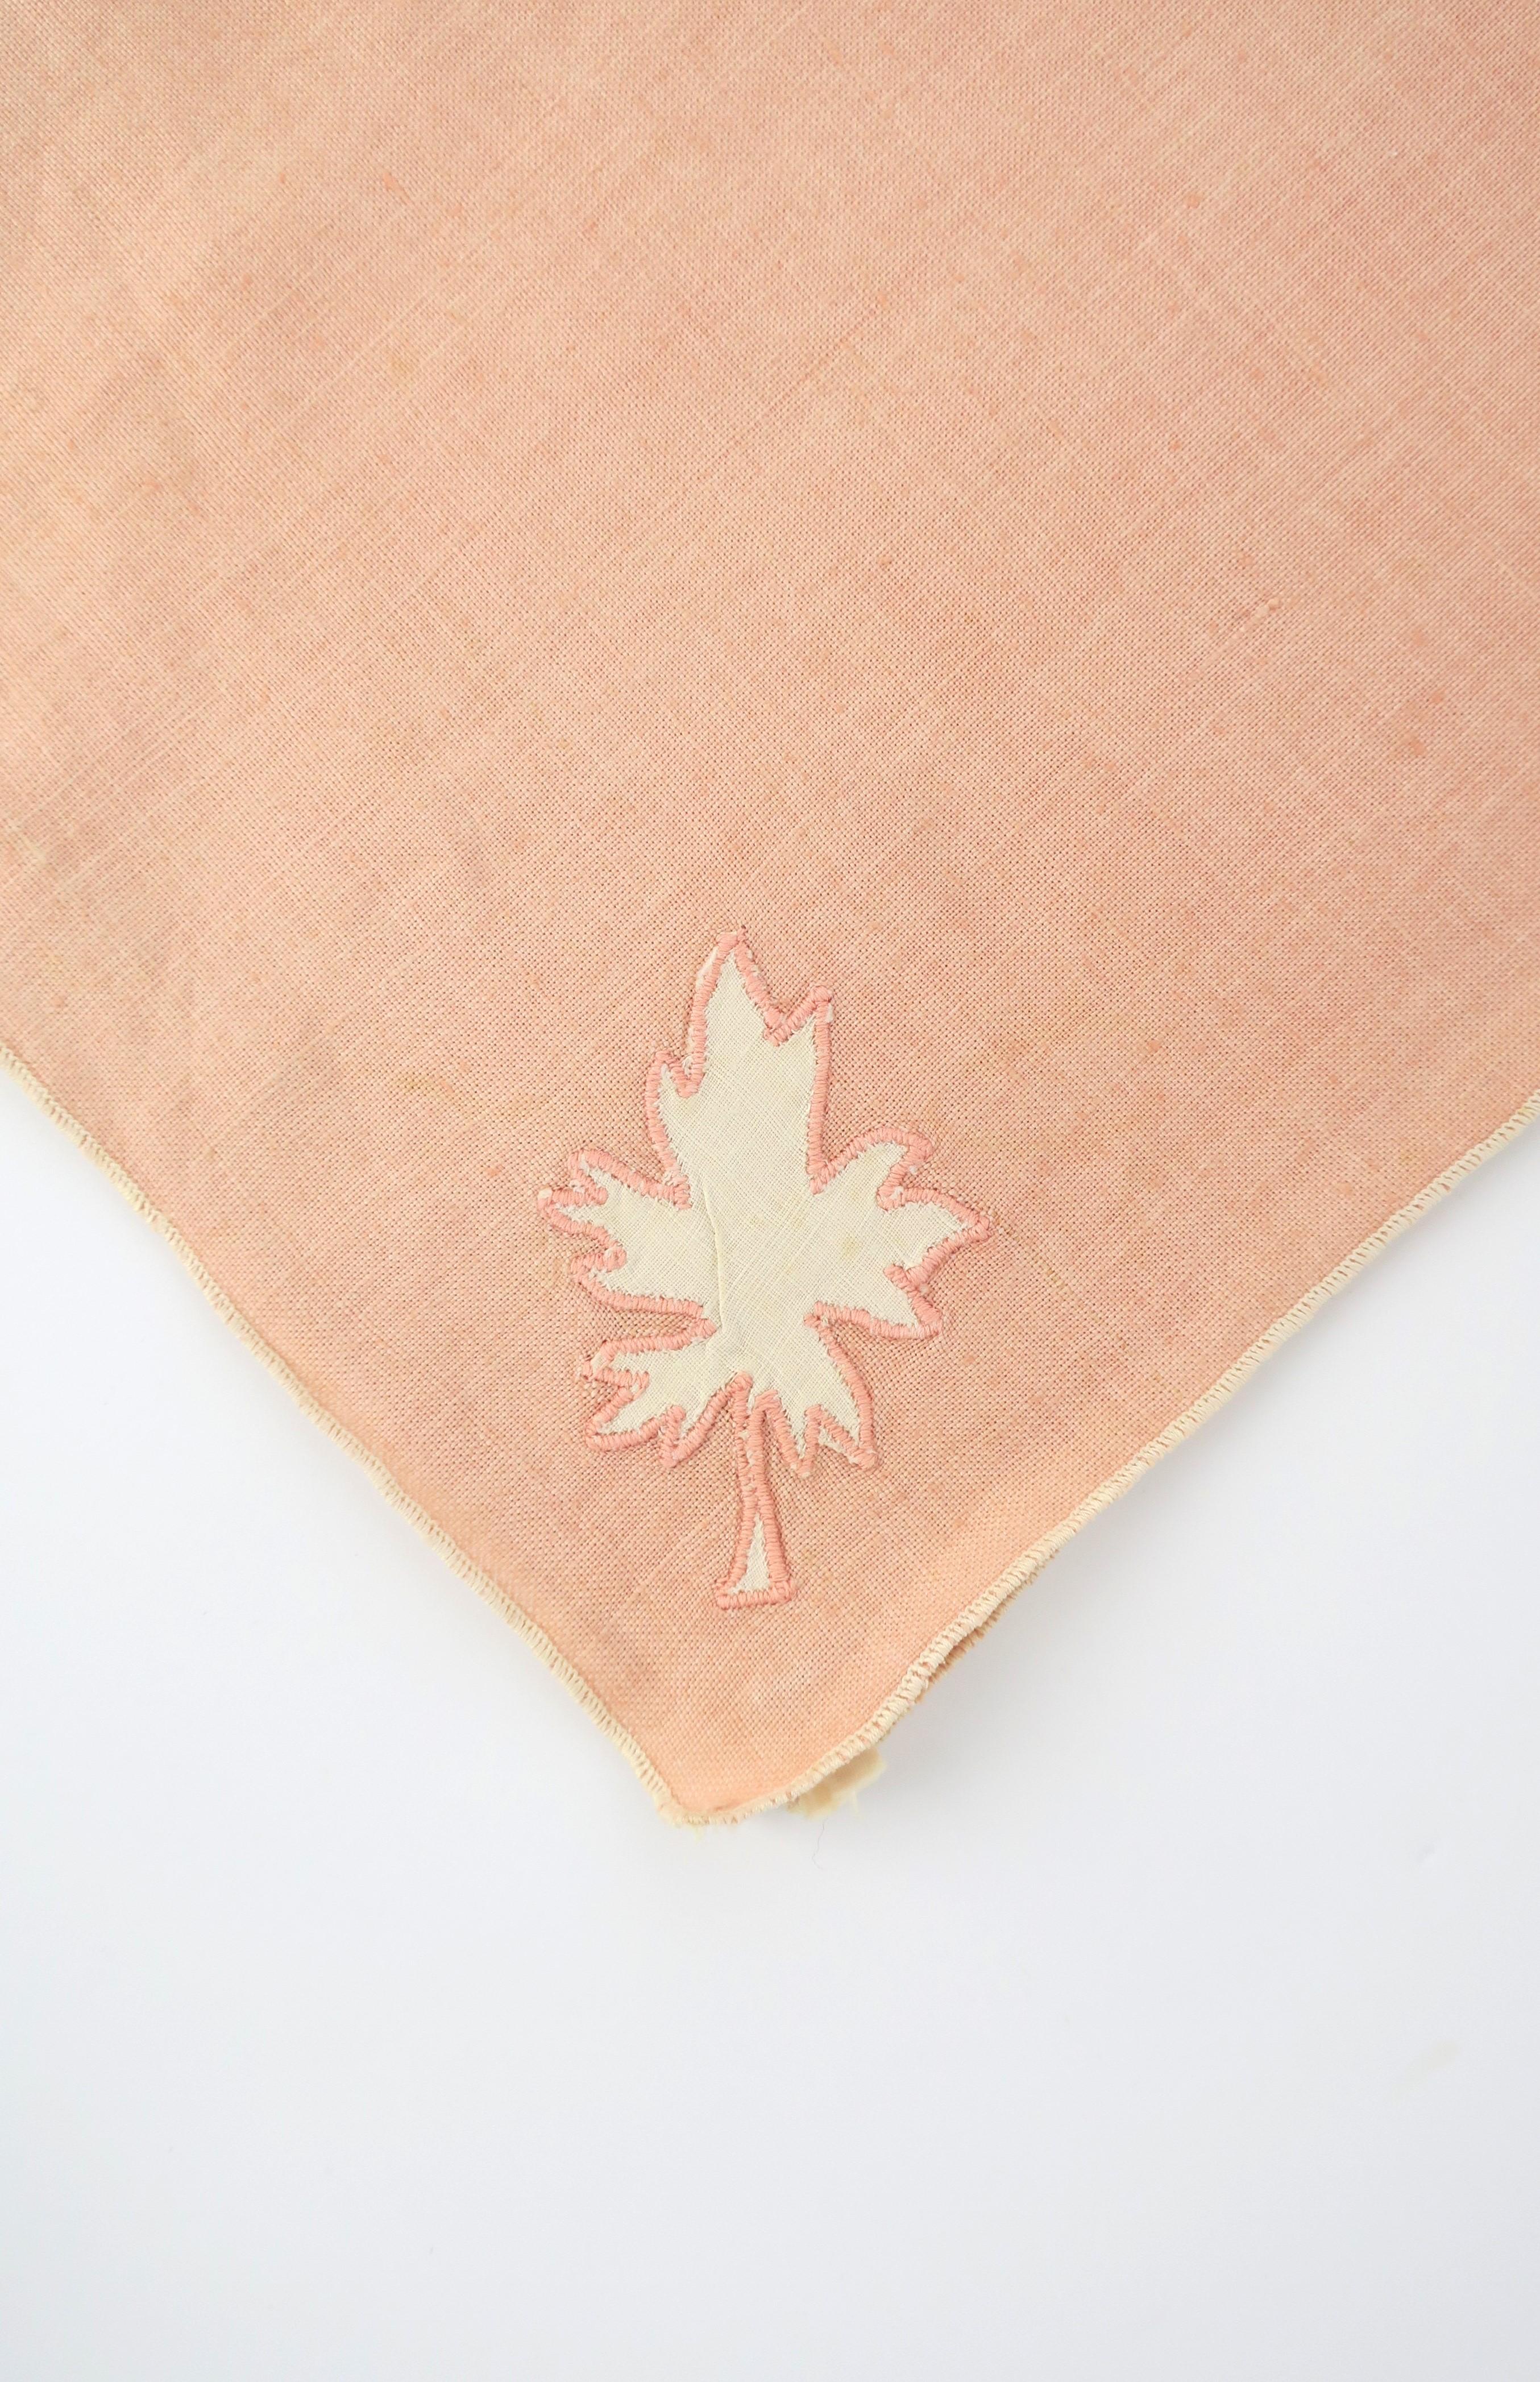 Pink Linen Napkins with Leaf Design, Set of 8 For Sale 2